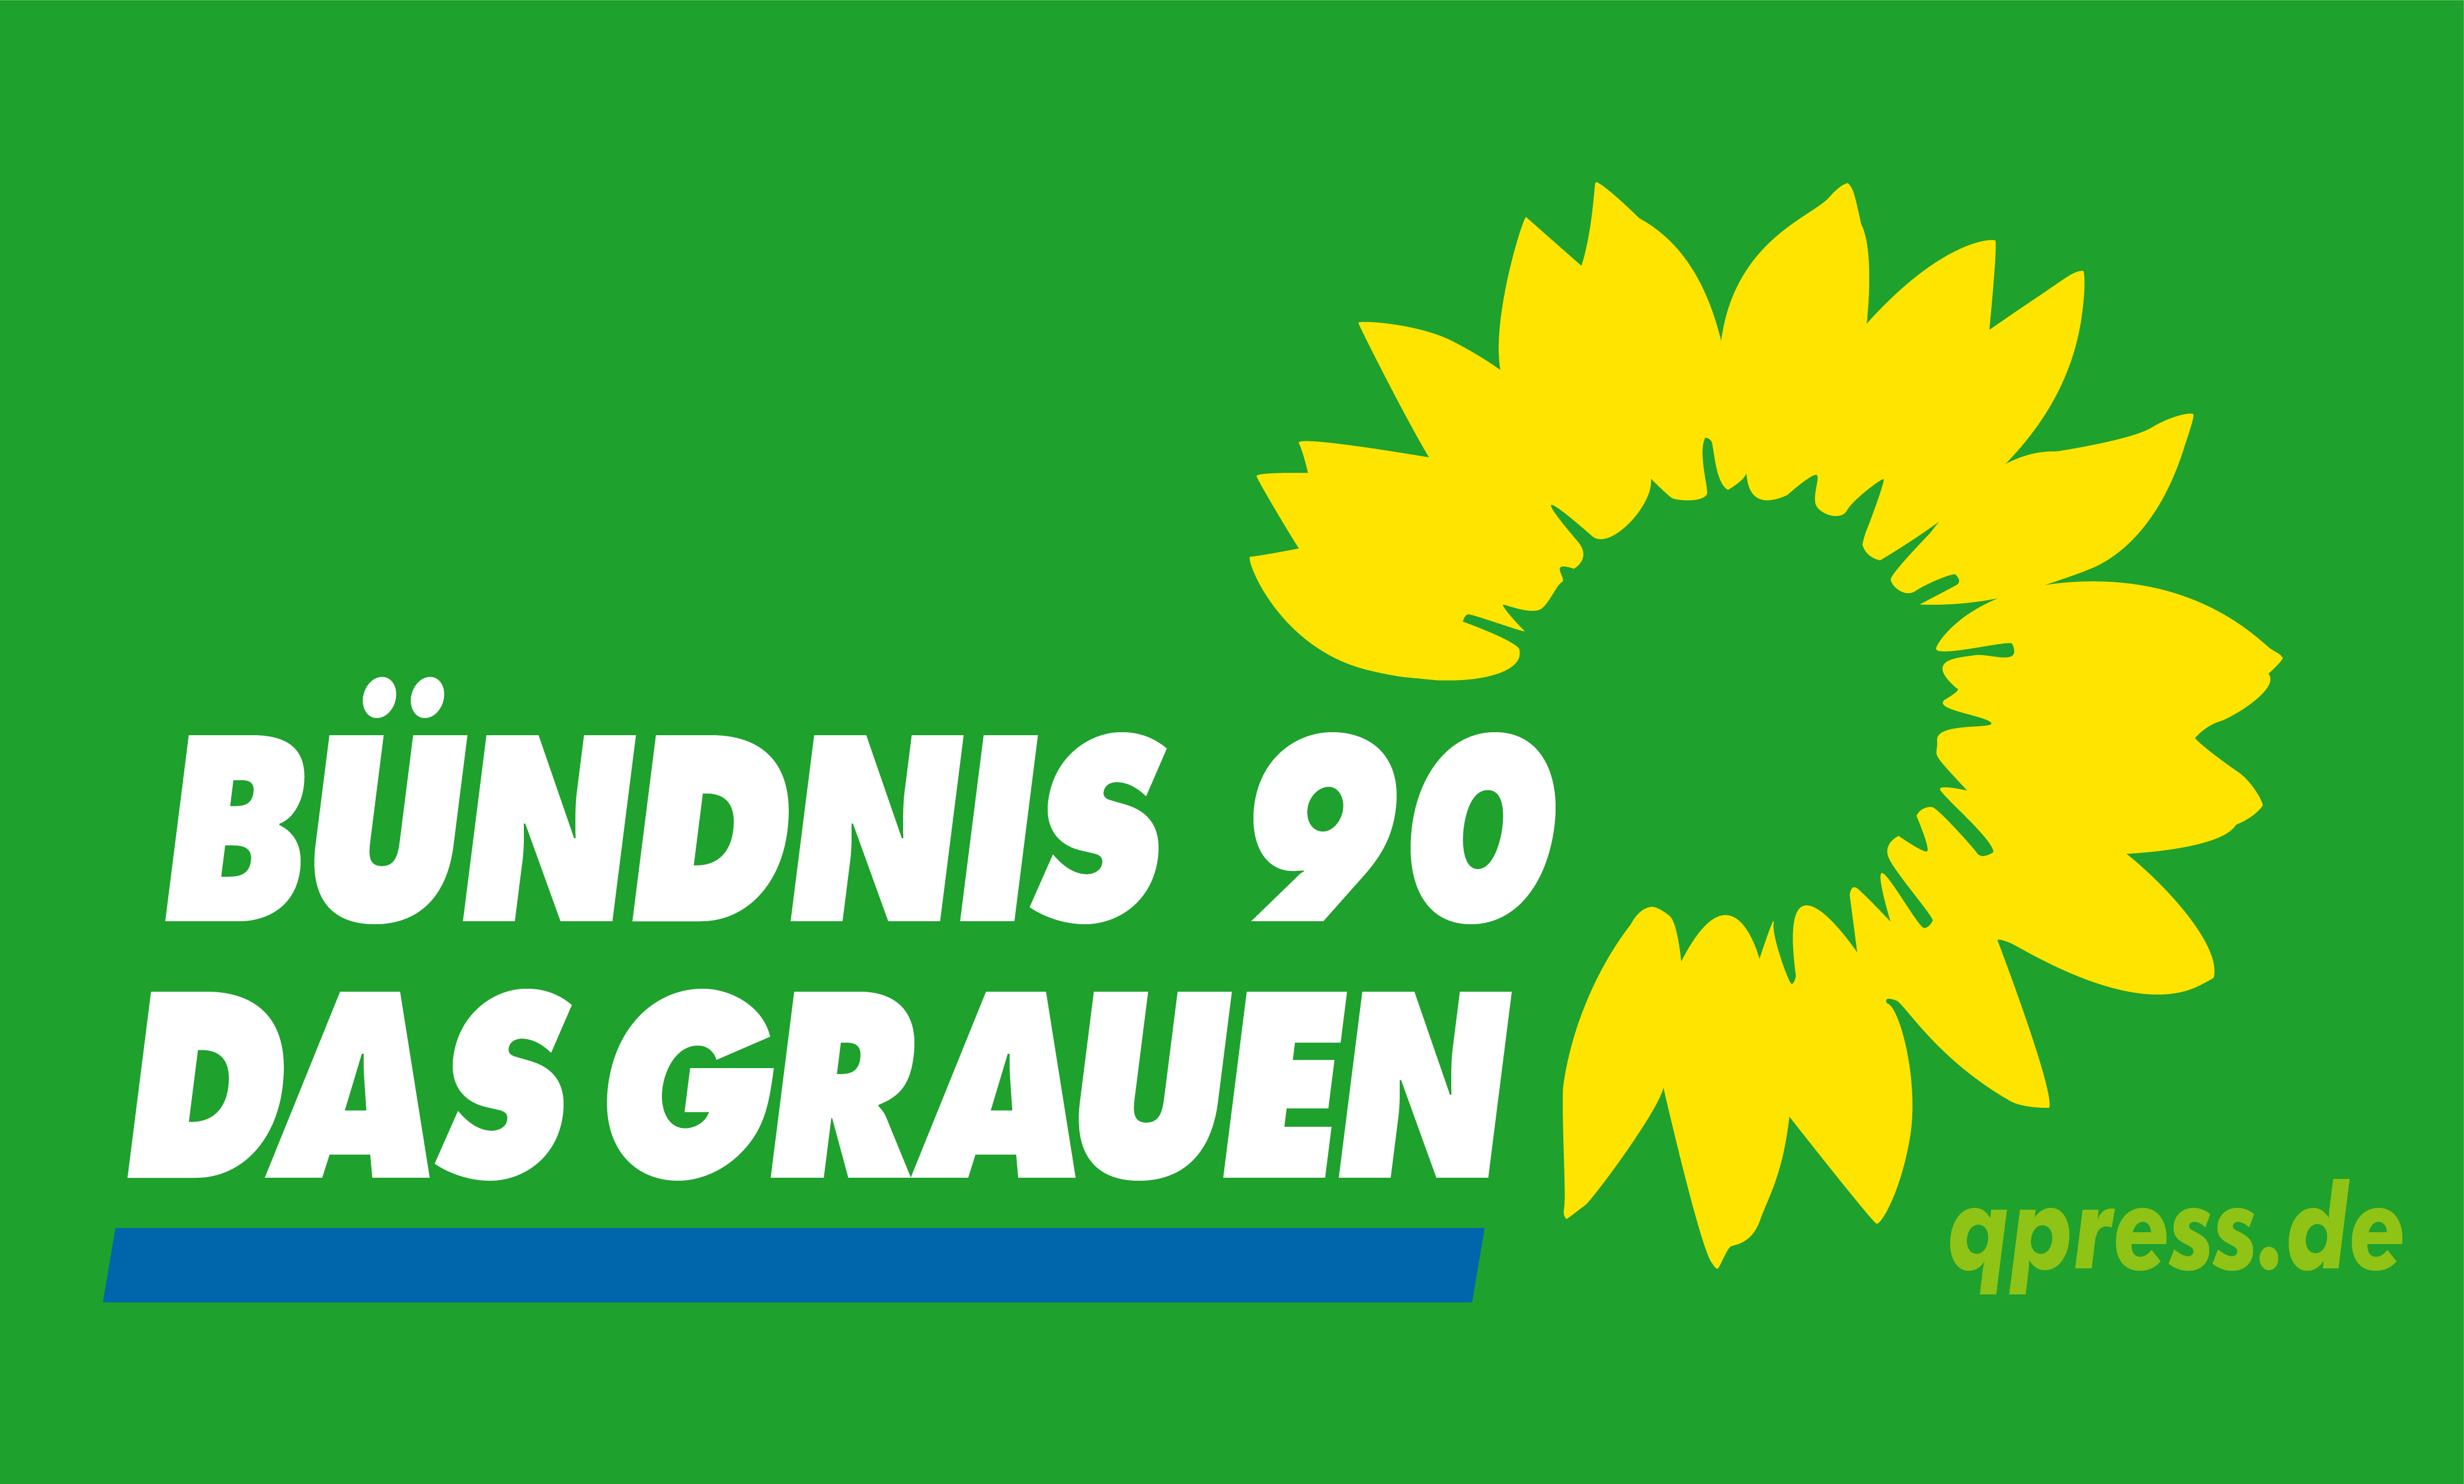 Die Grünen Logo : Logos | Presse | Bündnis 90/Die Grünen im Landtag